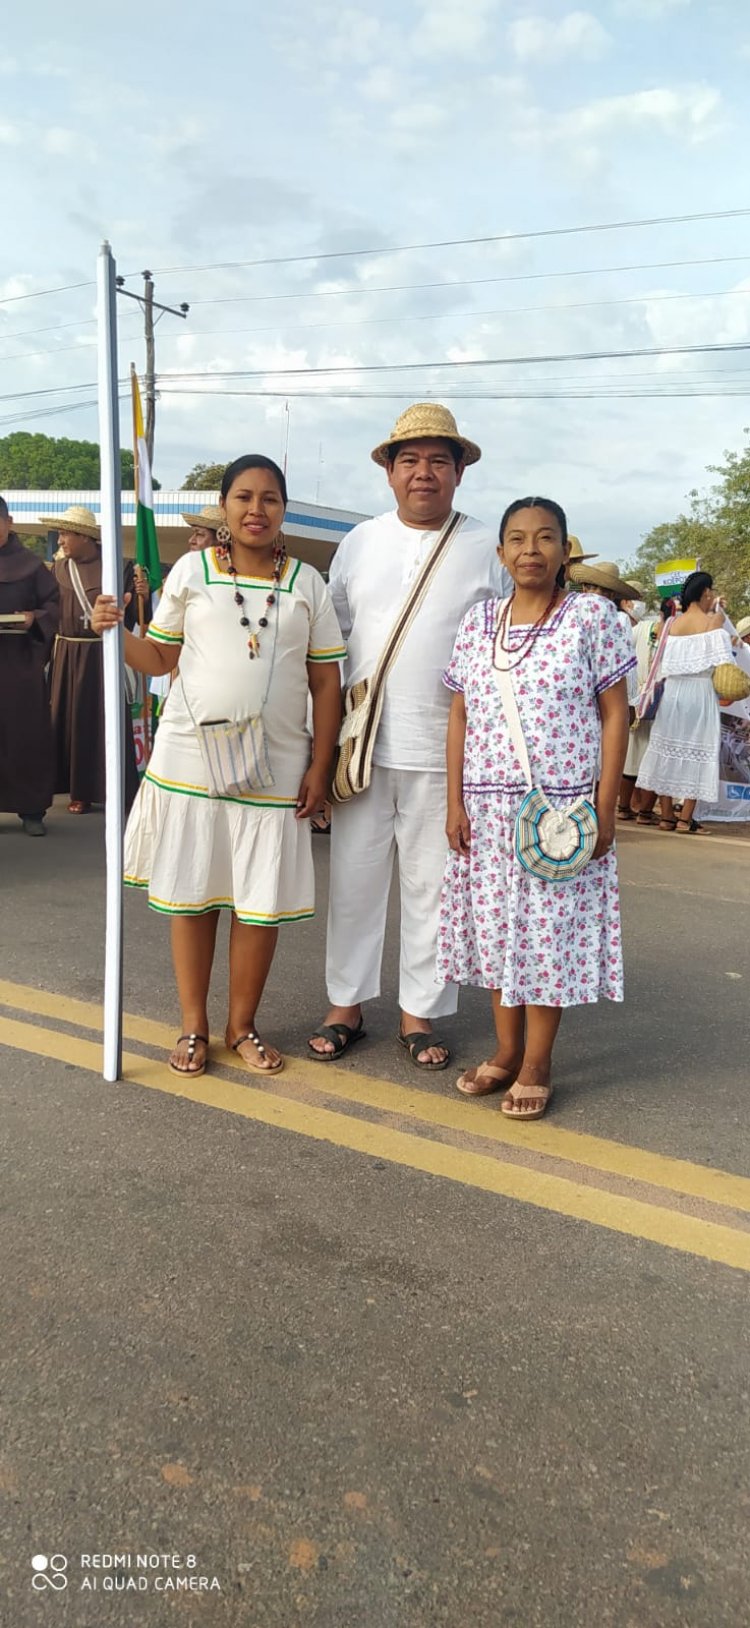 ILC GWARAYU dependiente del IPELC, participaron en la entrada Folclórica Cultural, dando realce a los 196 aniversario de Ascension de Guarayos.